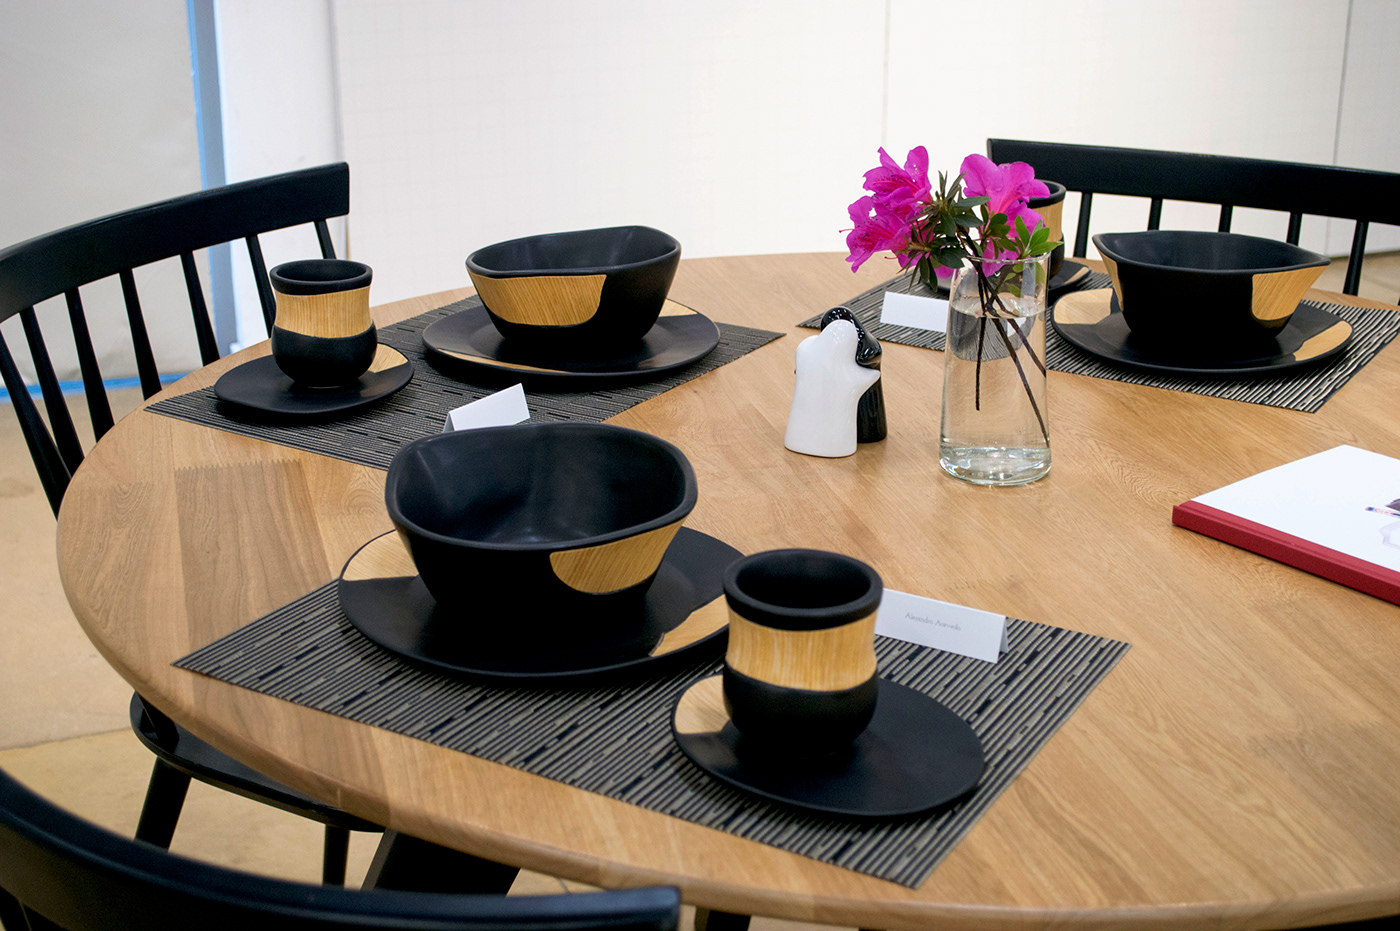 product design  ceramic wood tableware design